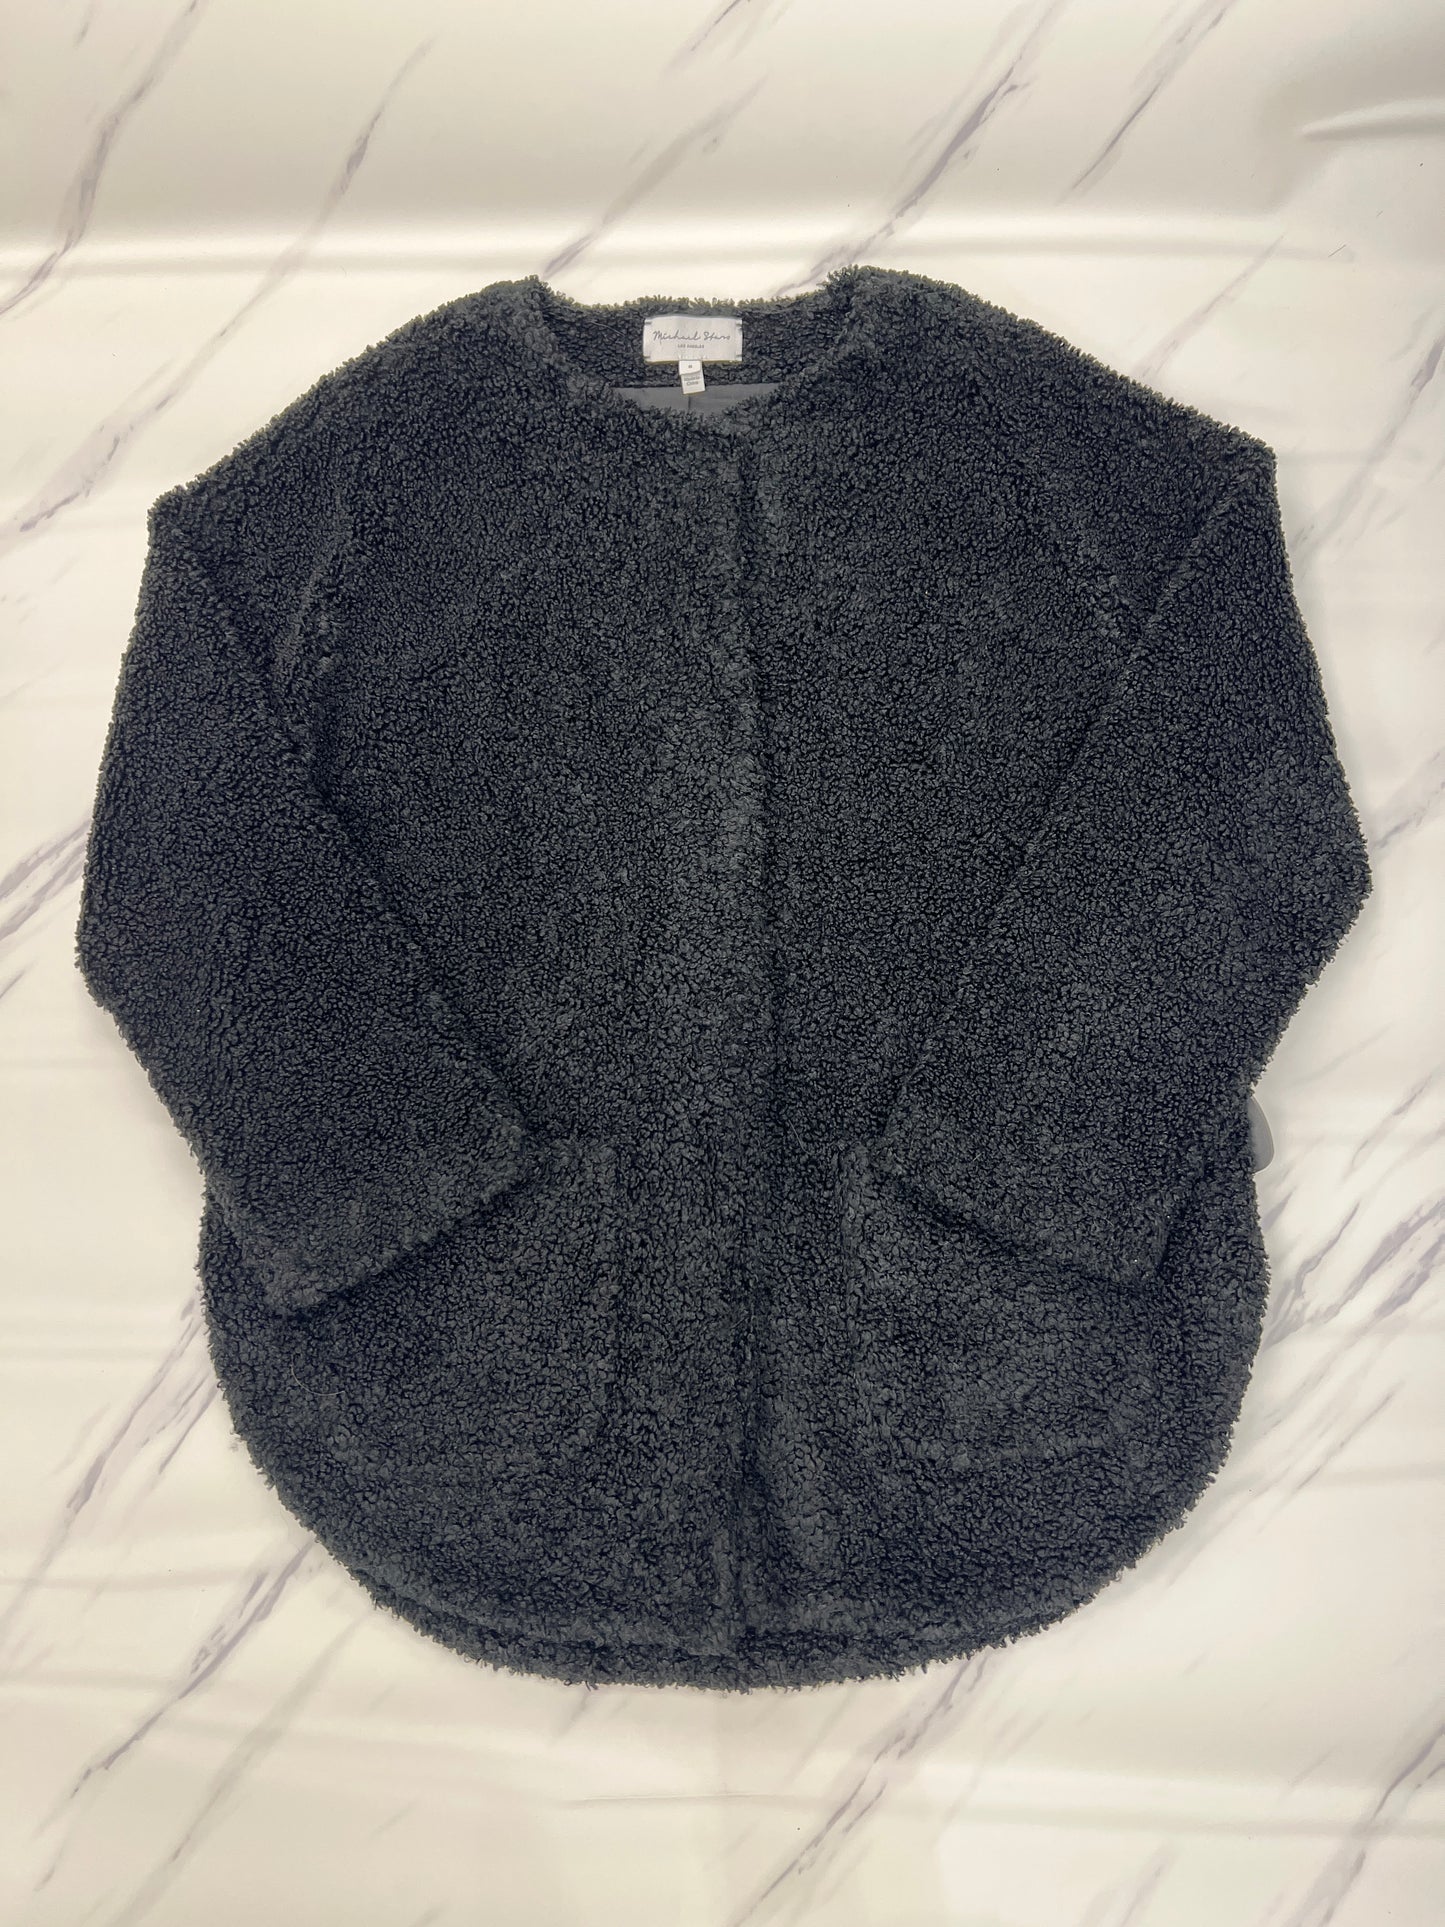 Jacket Fleece By Michael Stars  Size: S